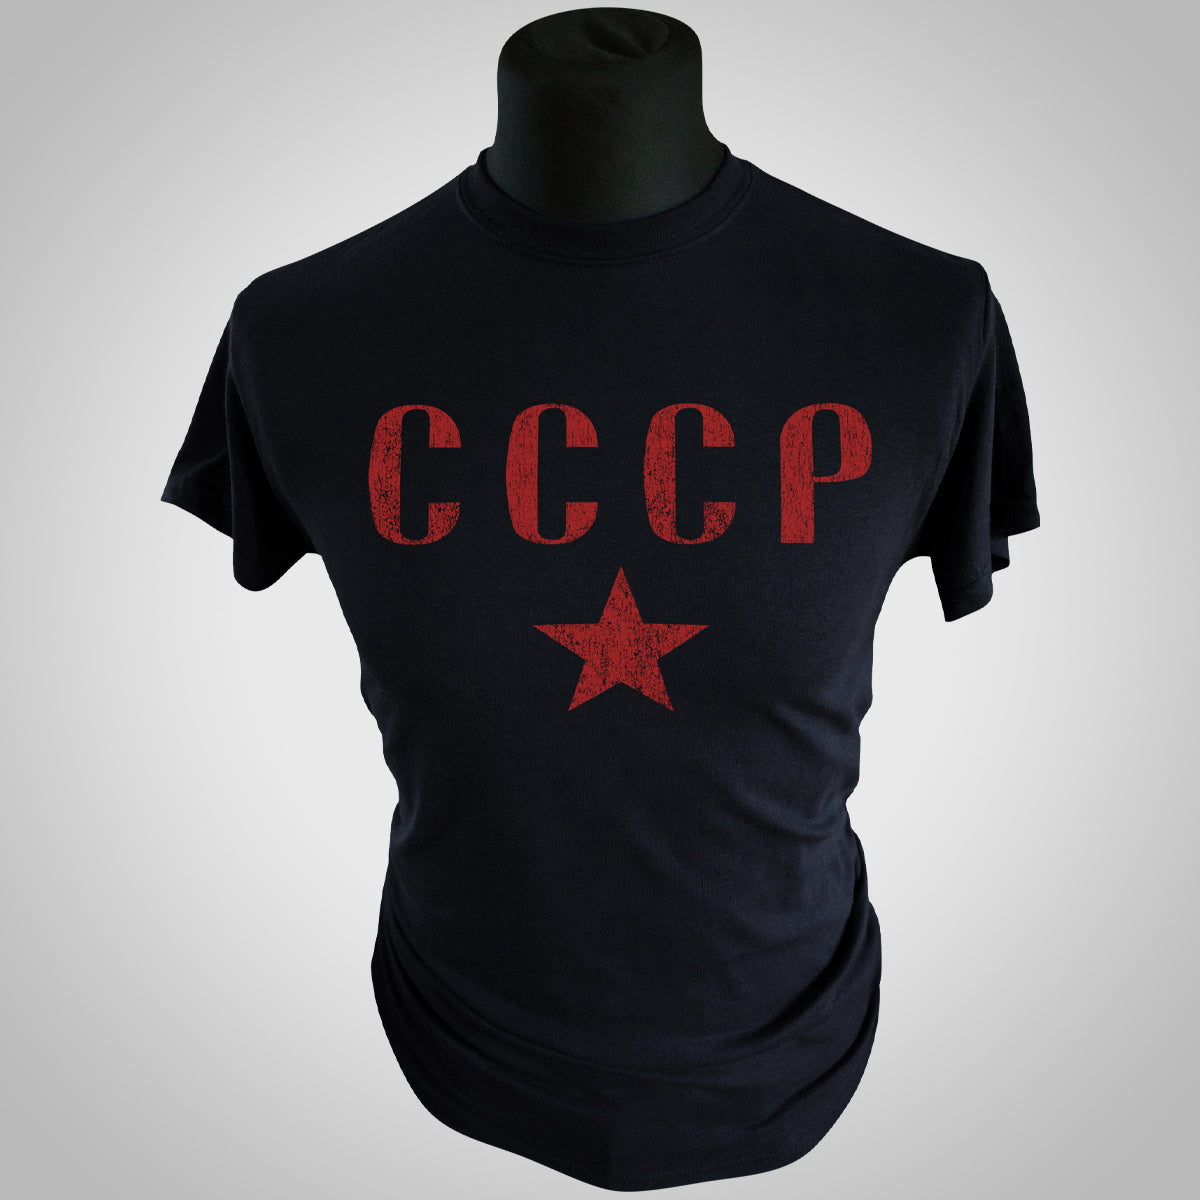 CCCP T Shirt (Black)